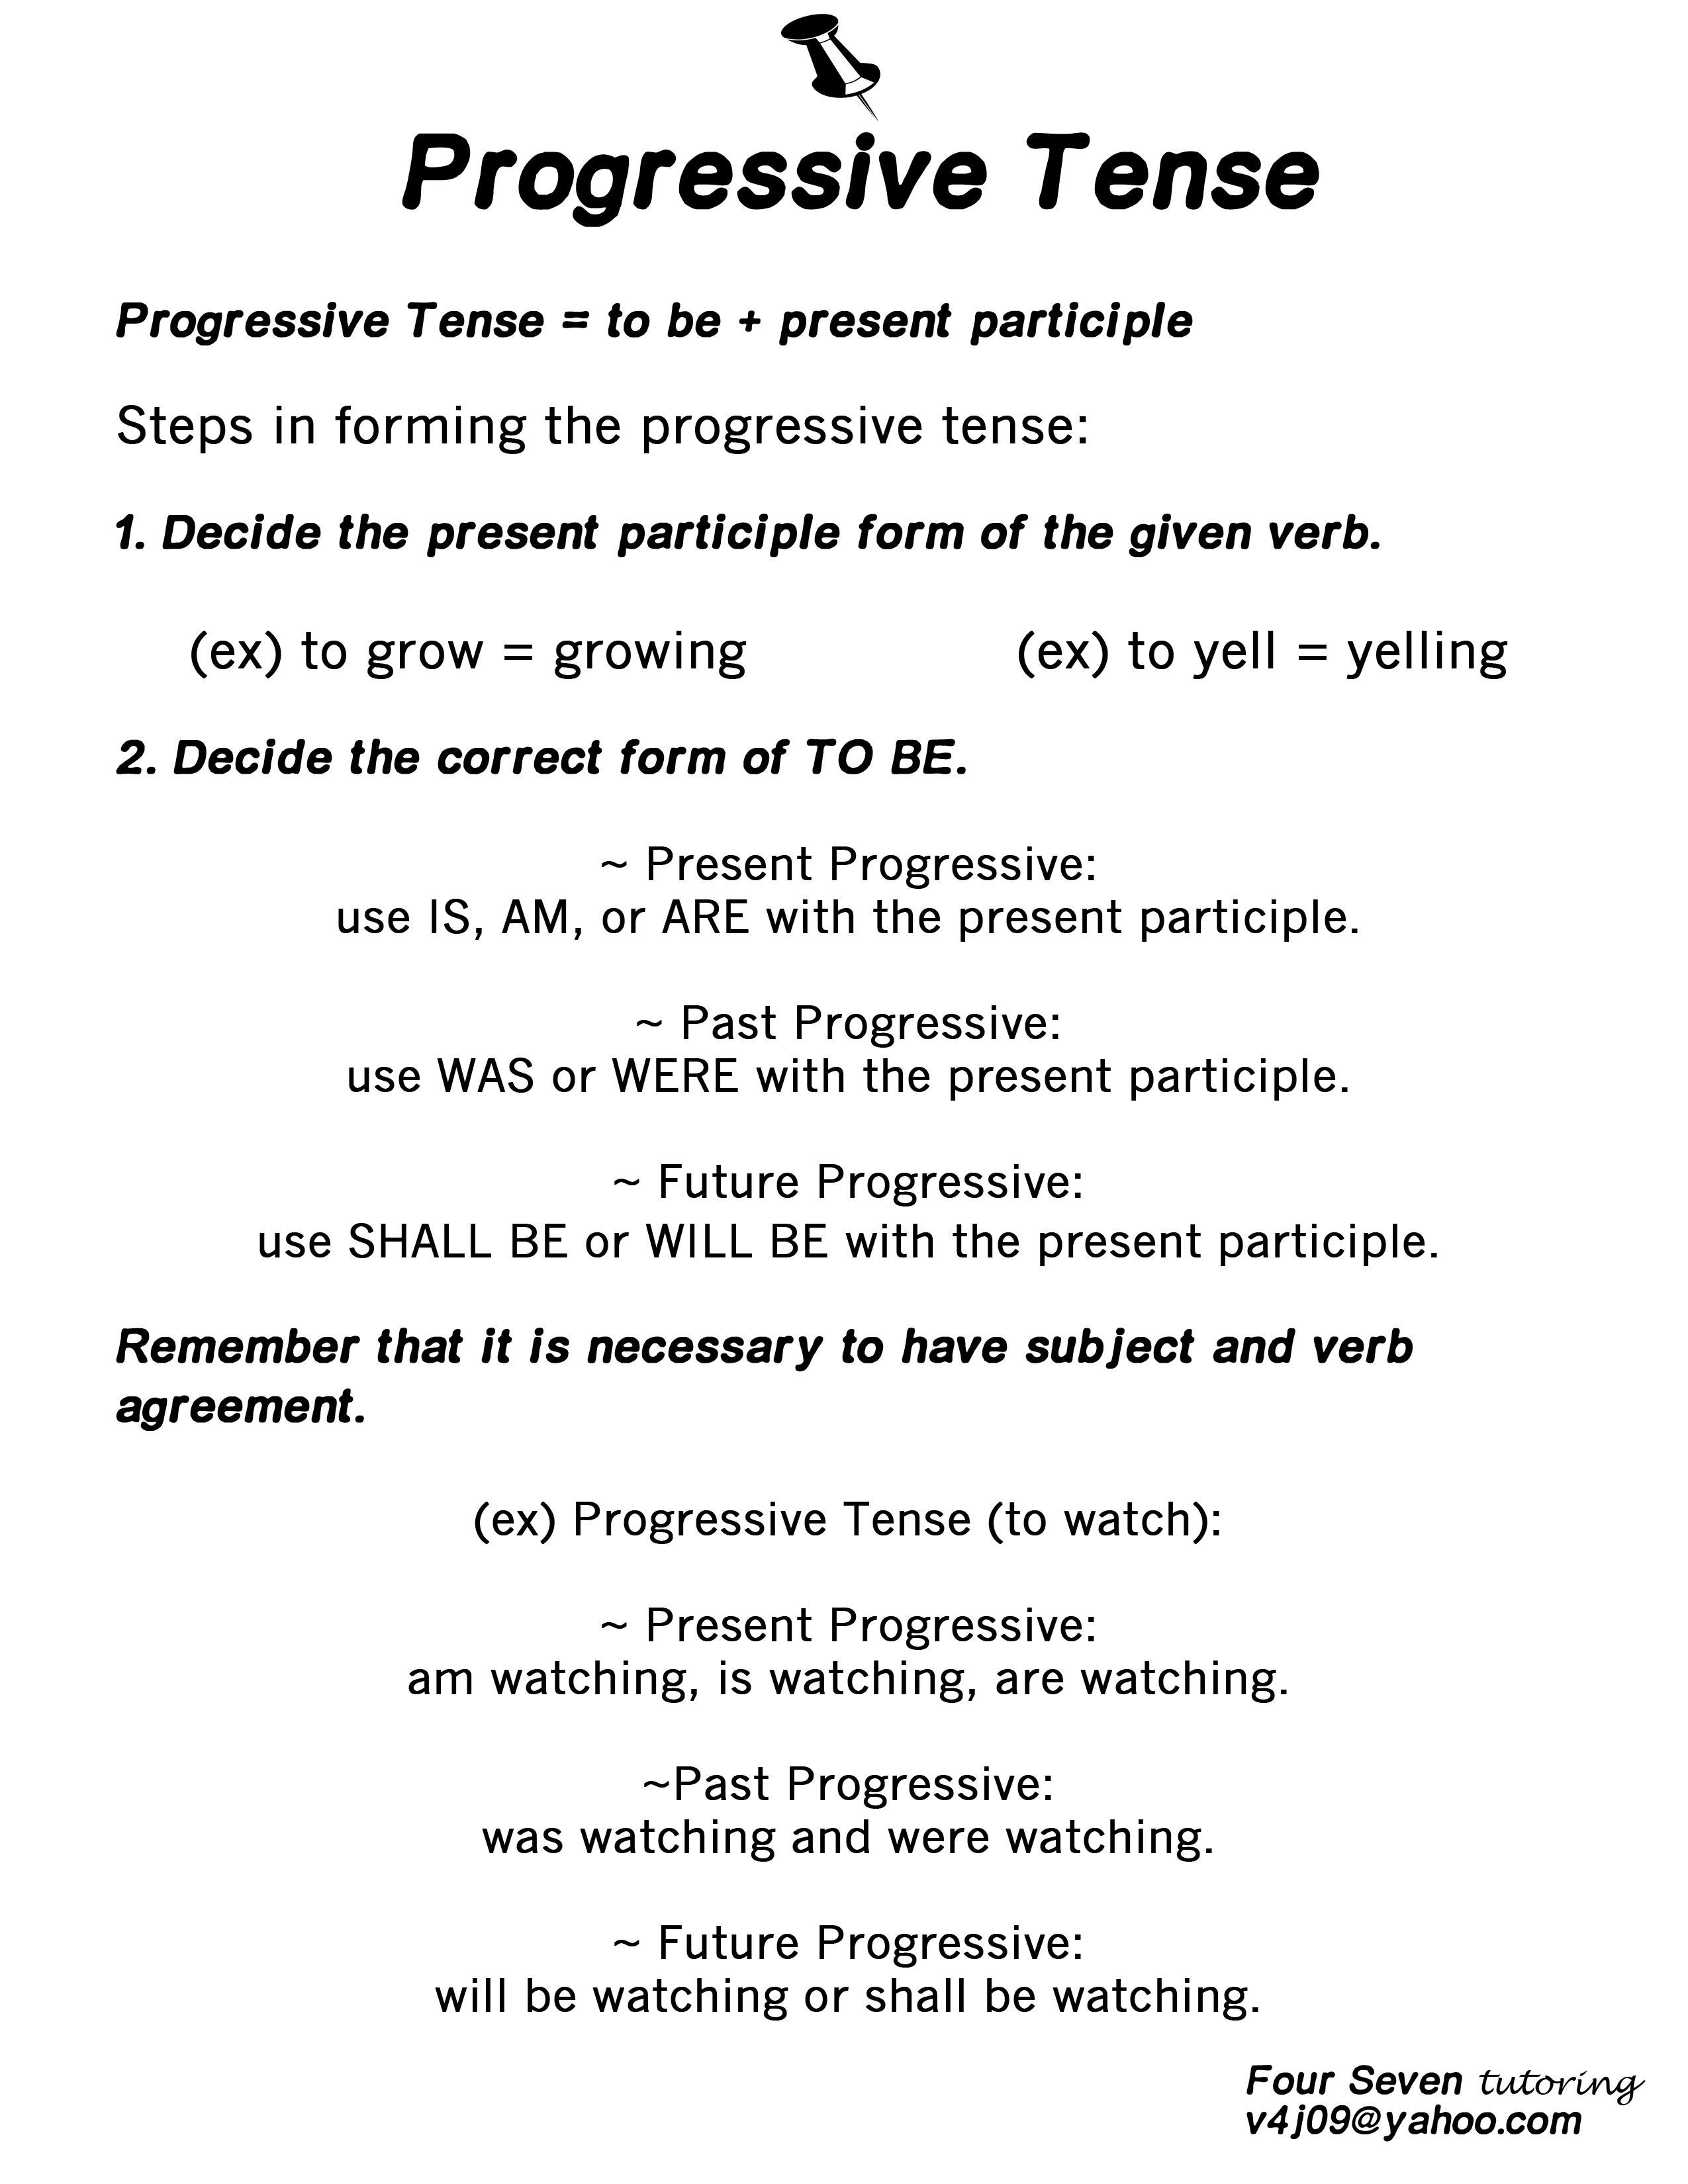 progressive-tense-resource-four-seven